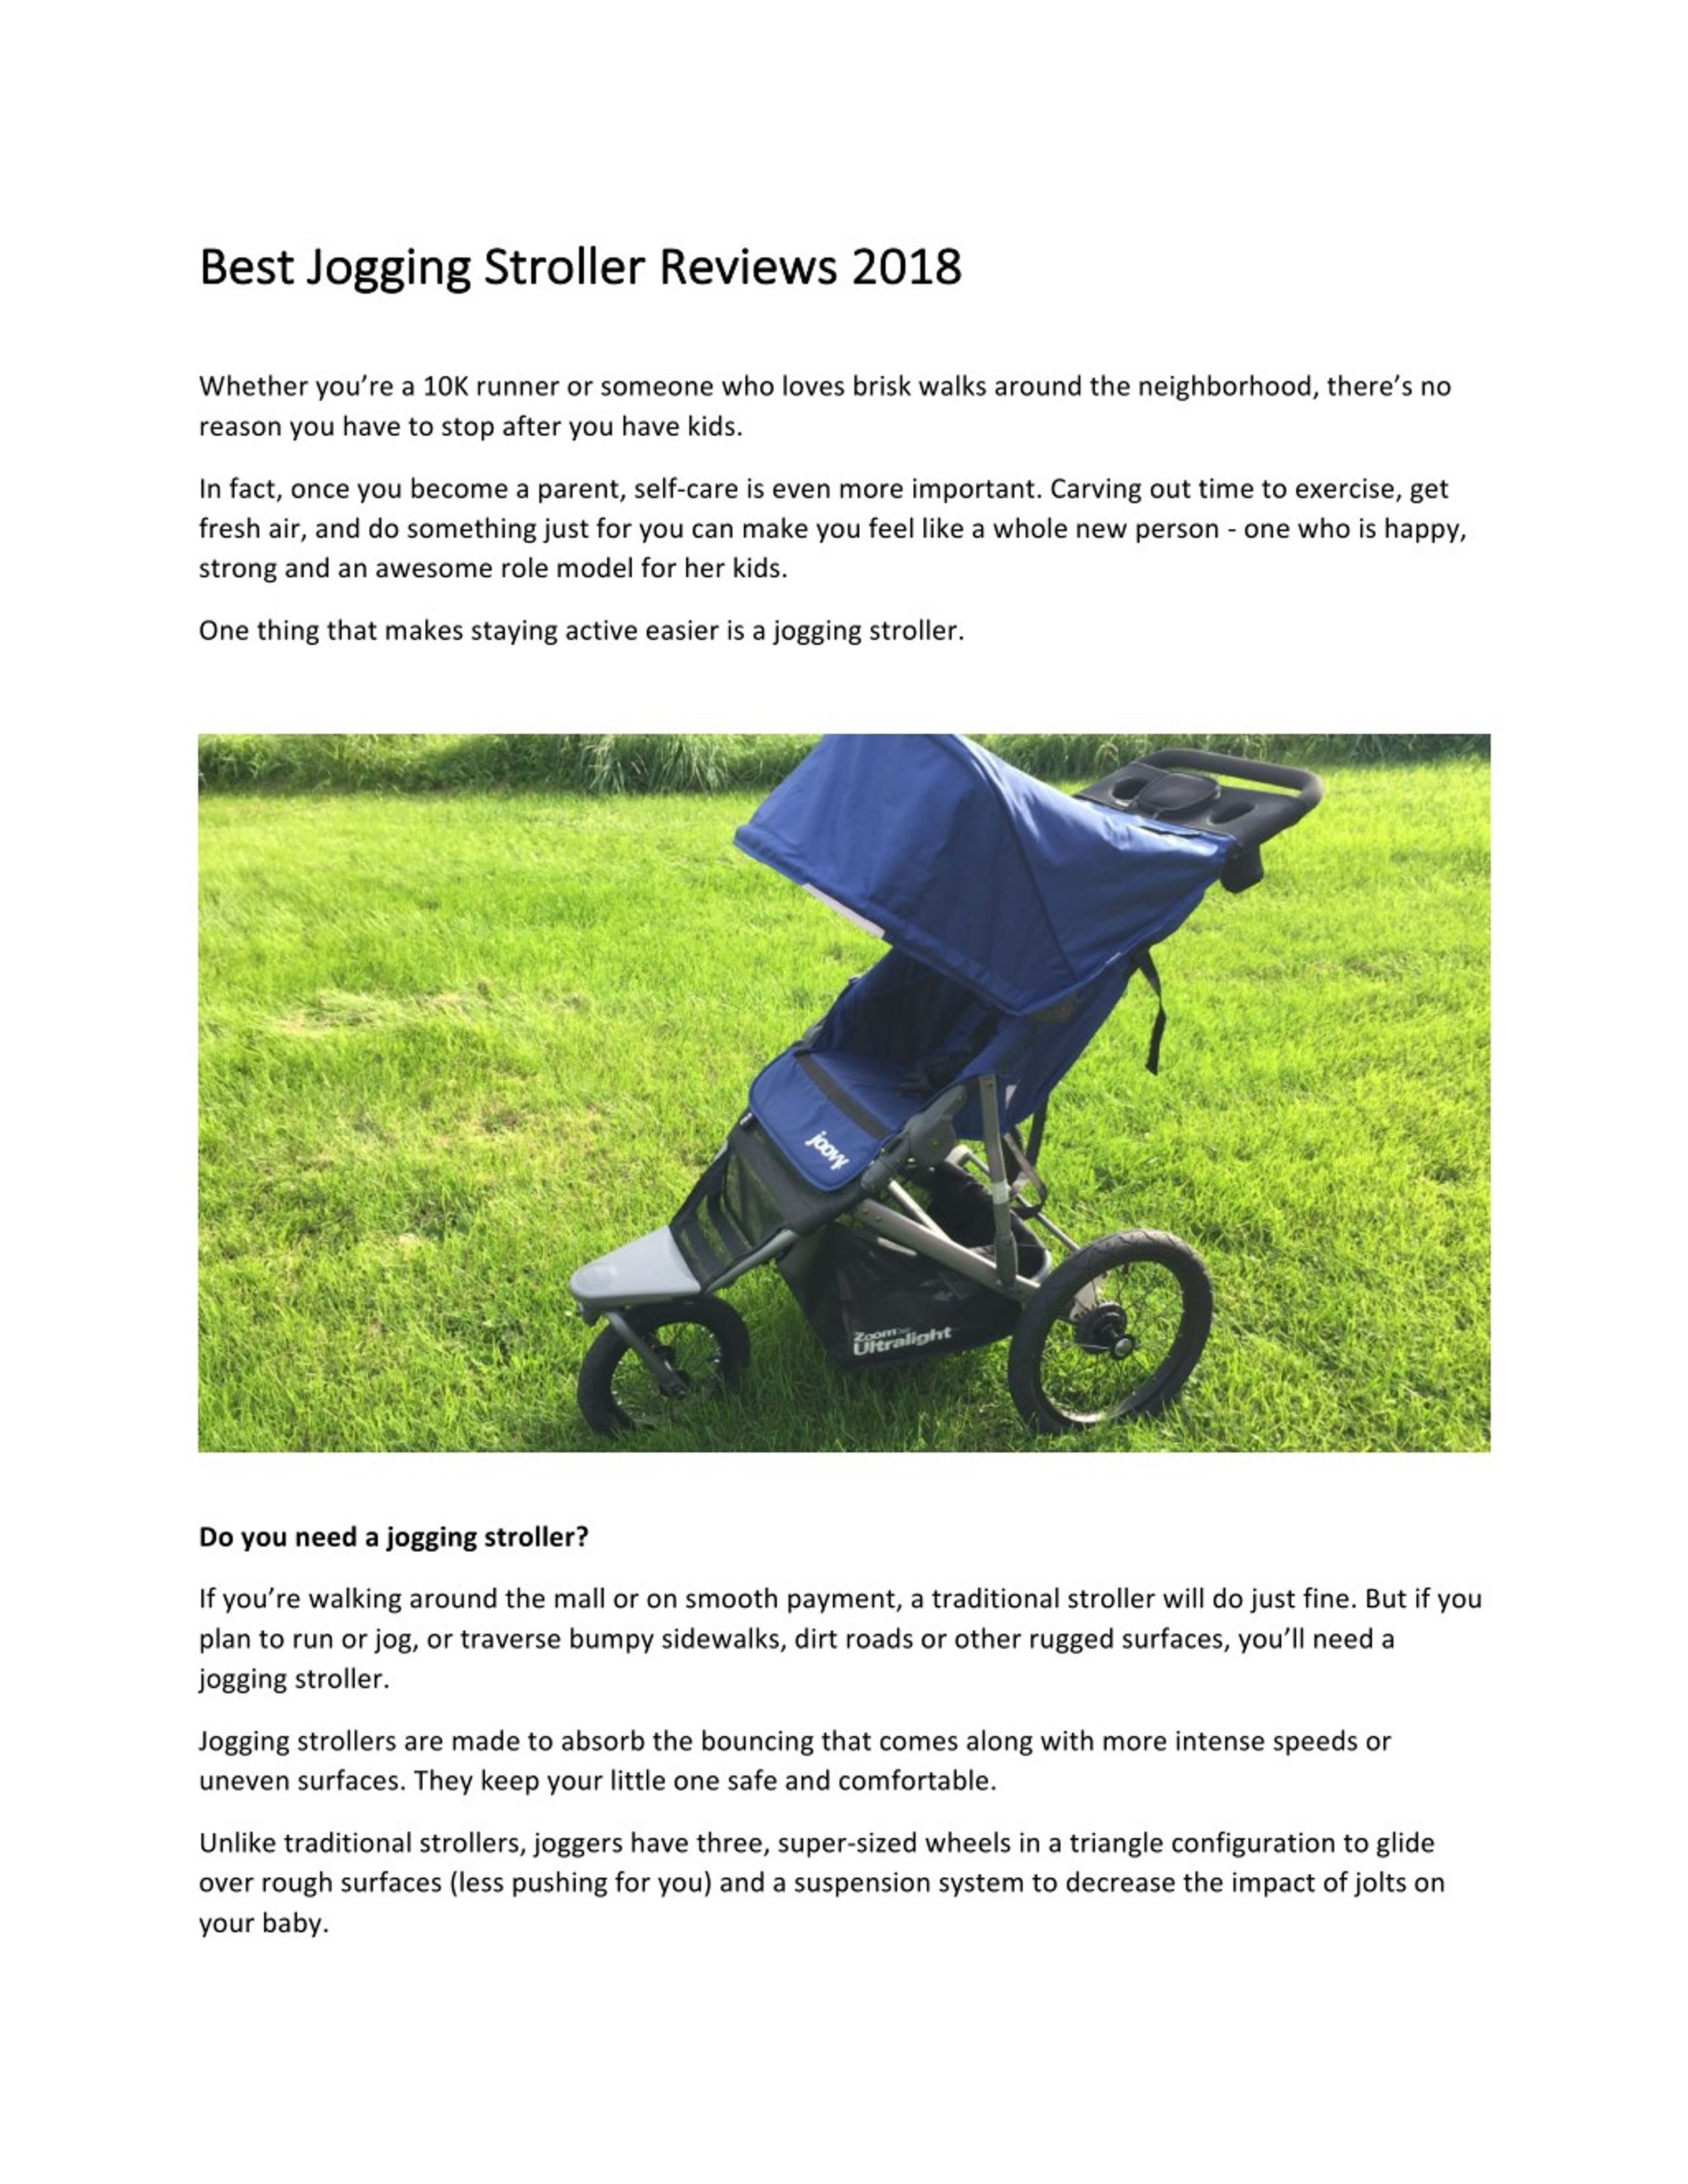 strollers reviews 2018